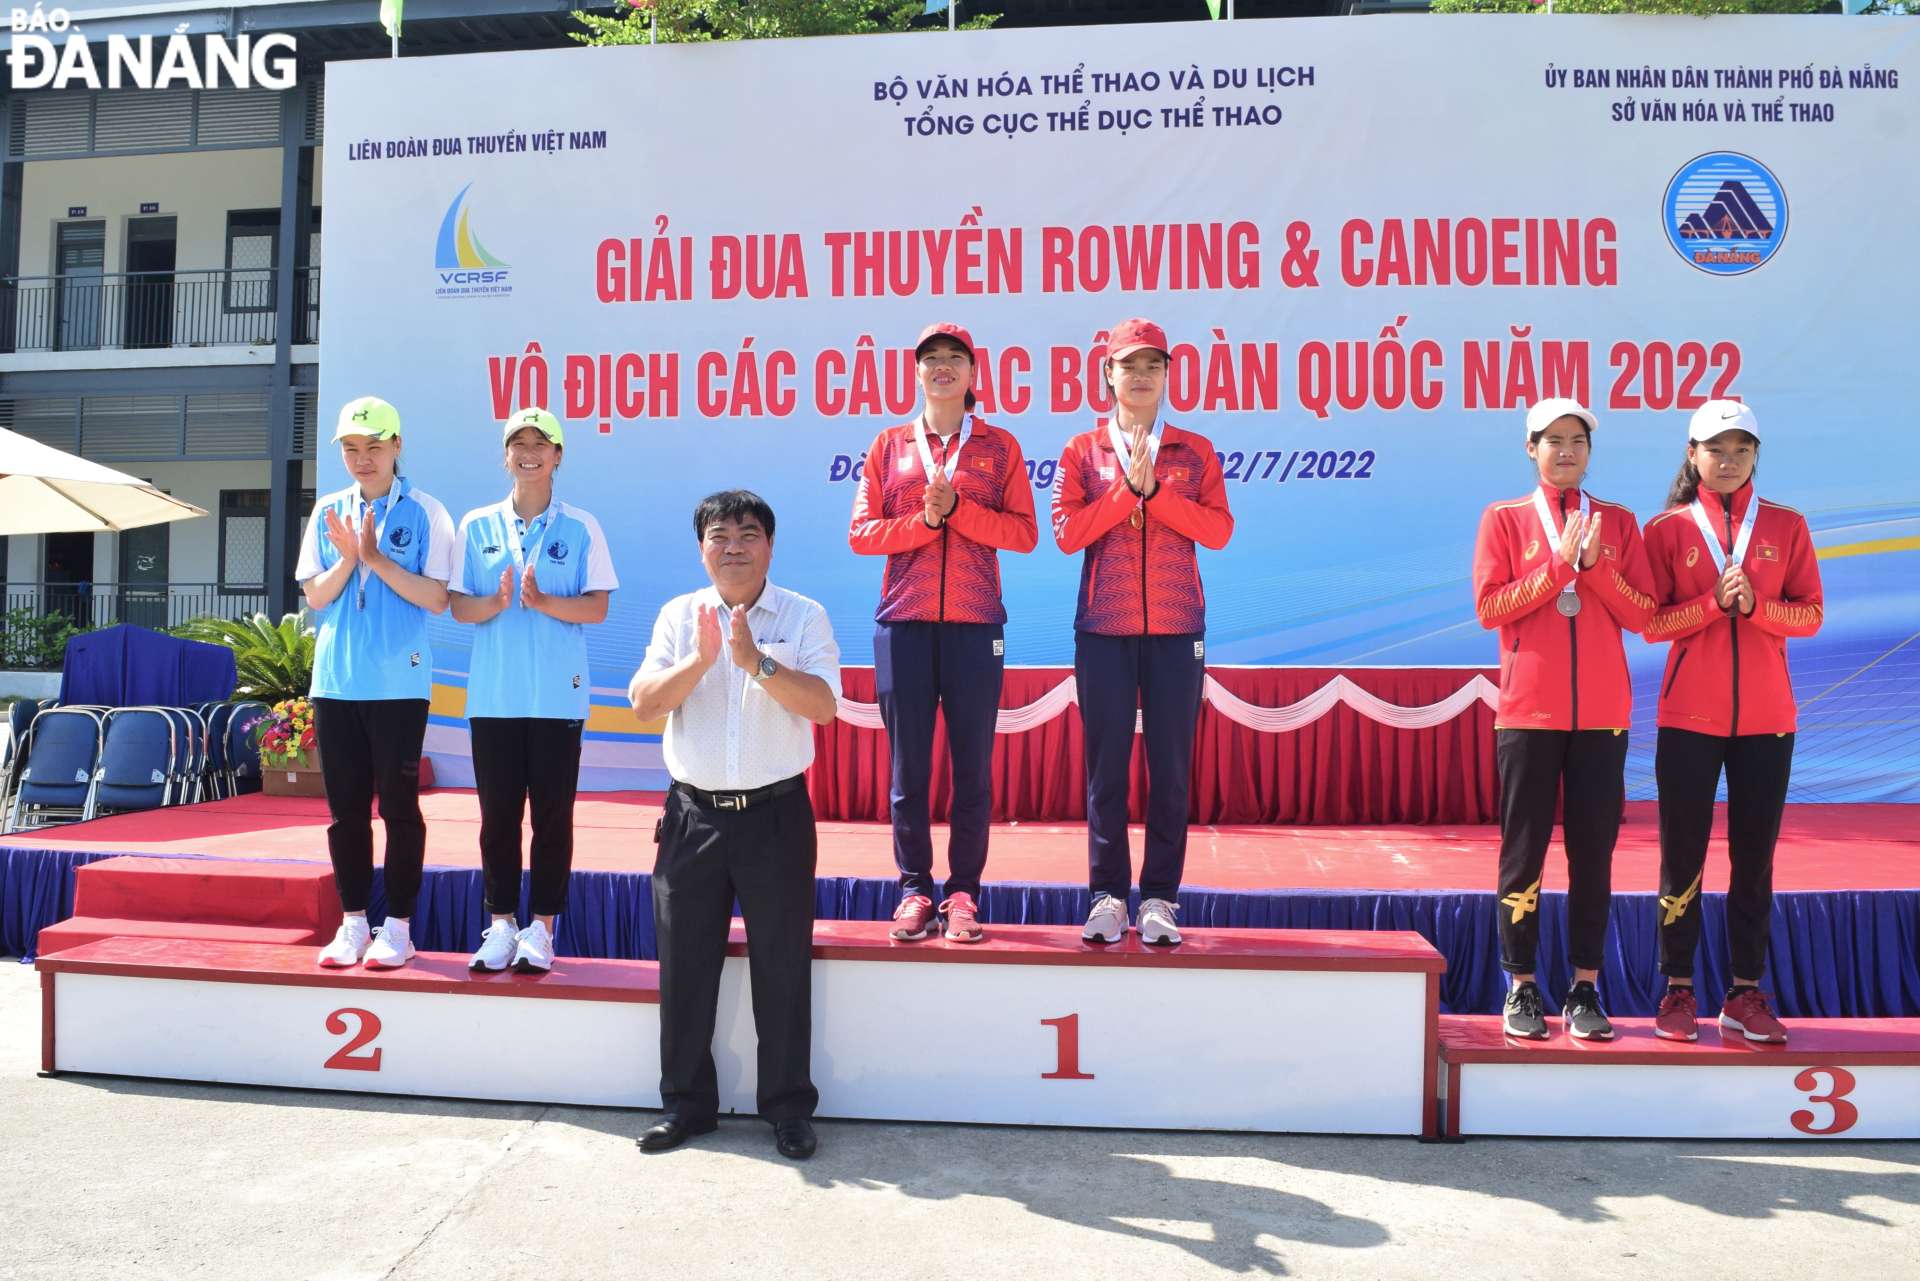 Ông Nguyễn Trọng Thao, Phó Giám đốc Sở Văn hóa và Thể thao trao Huy chương cho các vận động viên ở nội dung rowing dành cho nữ. Ảnh: P.N